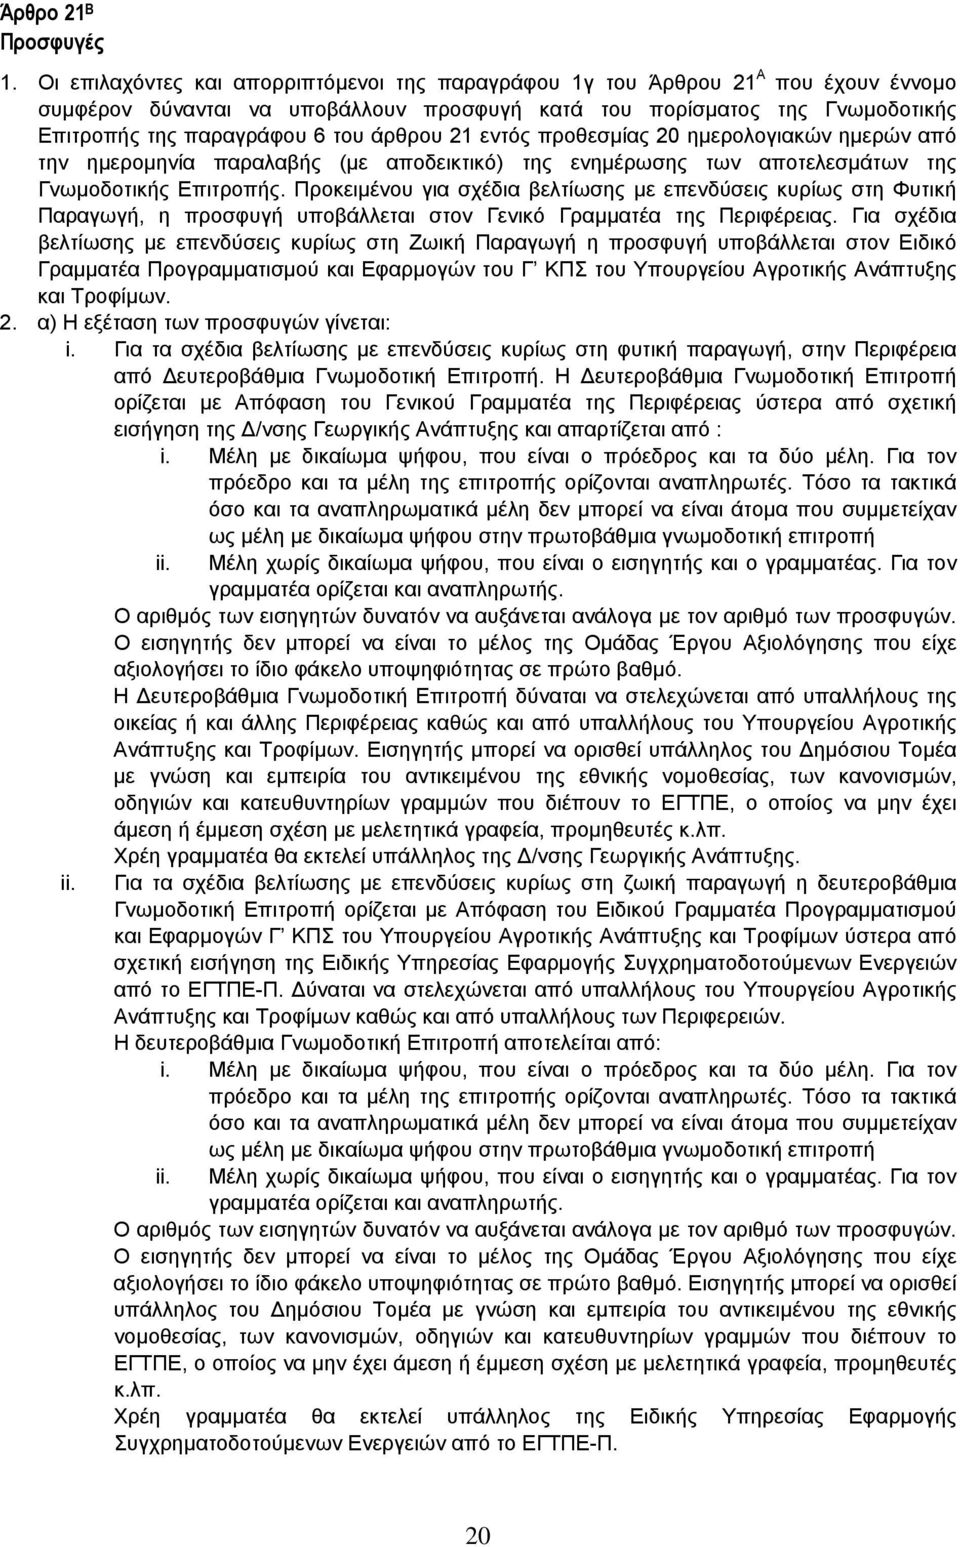 άρθρου 21 εντός προθεσµίας 20 ηµερολογιακών ηµερών από την ηµεροµηνία παραλαβής (µε αποδεικτικό) της ενηµέρωσης των αποτελεσµάτων της Γνωµοδοτικής Επιτροπής.